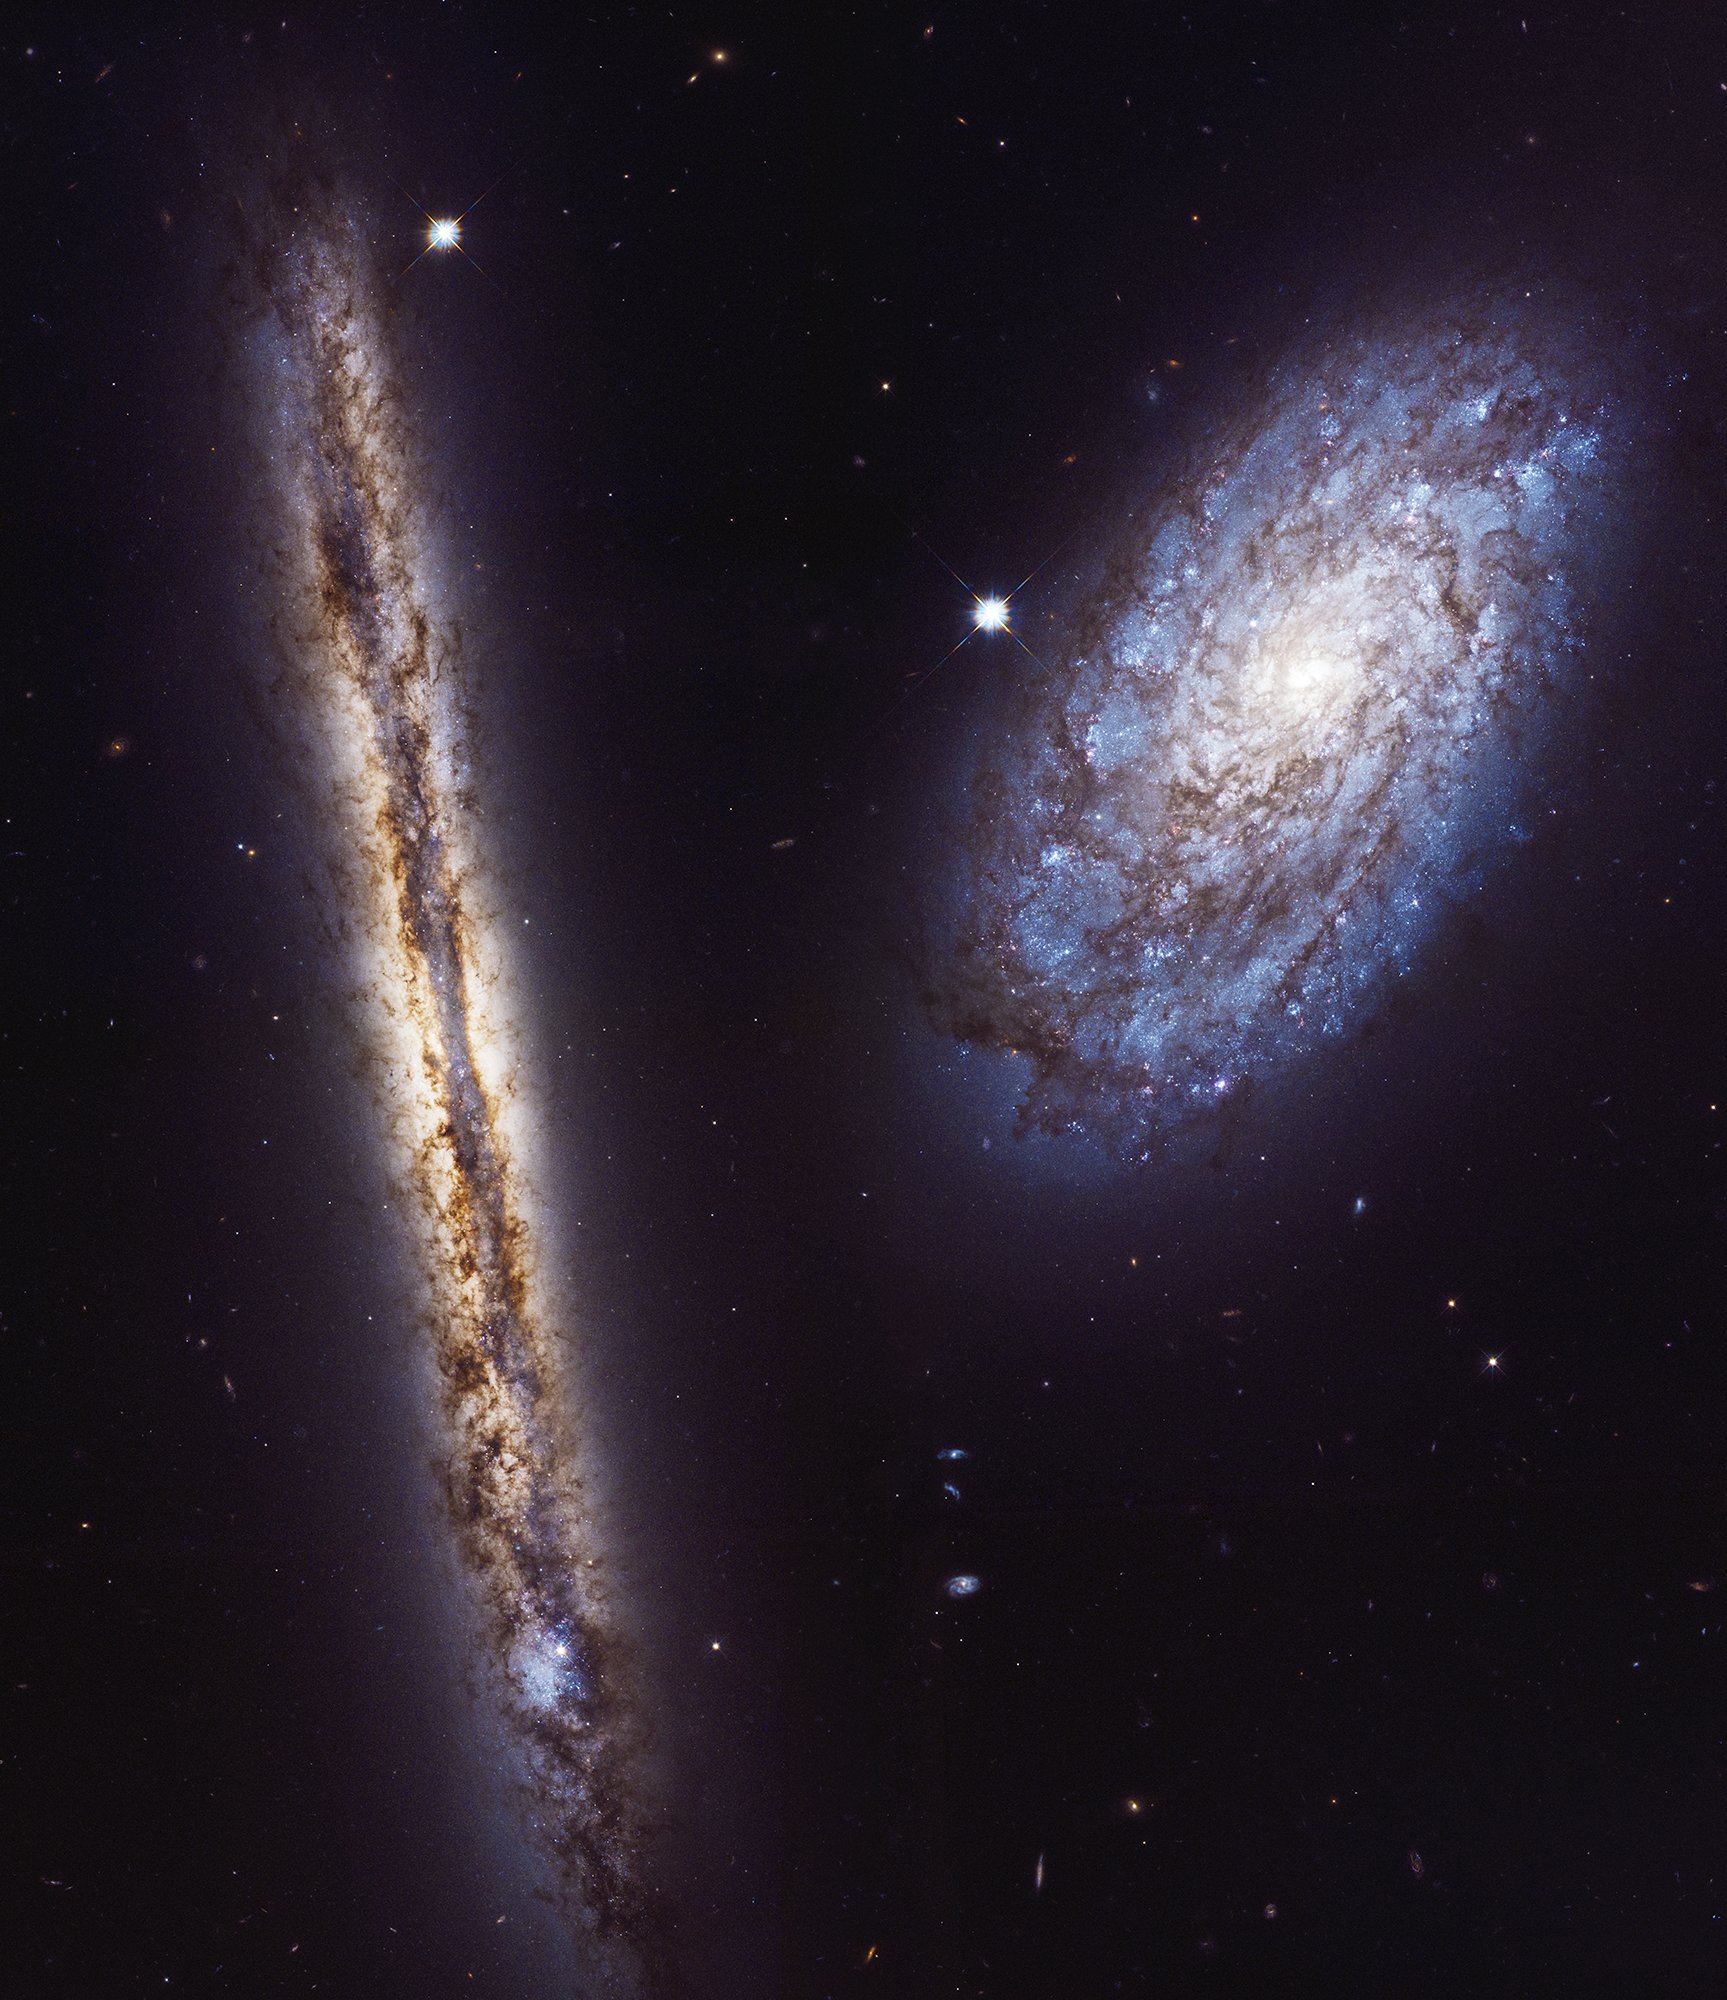 NGC 4302 and NGC 4298